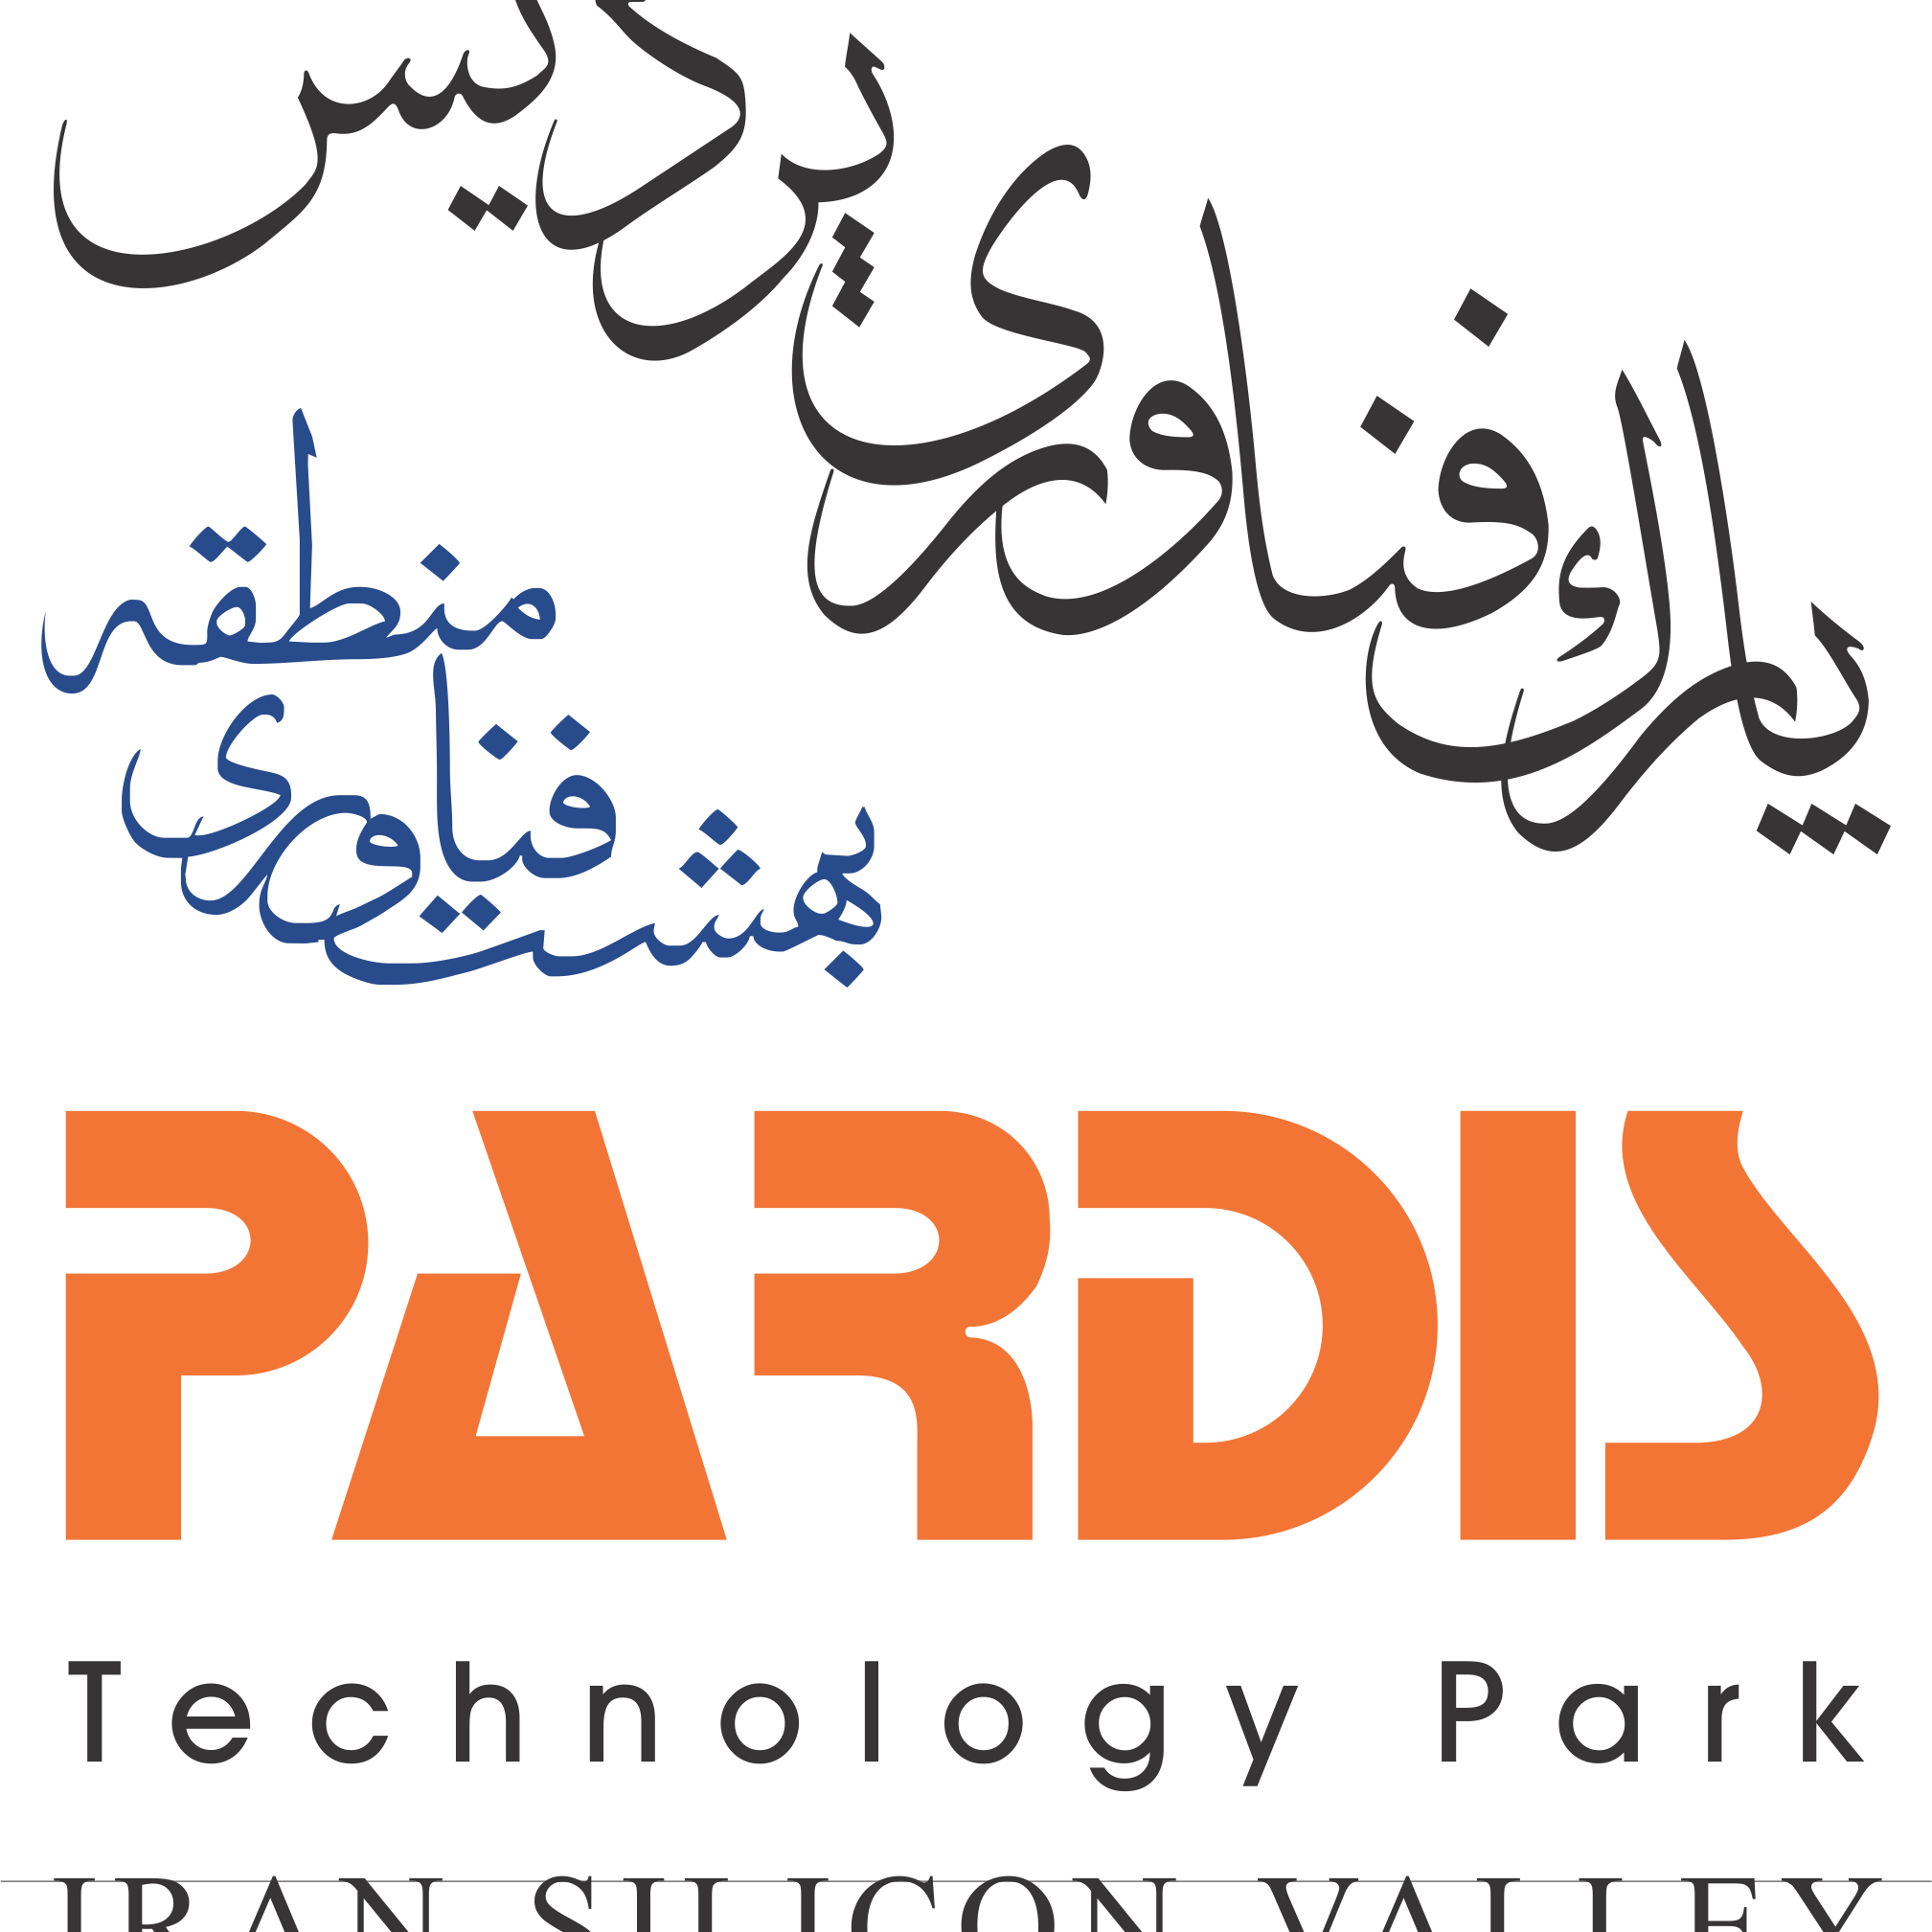 پارک فناوری پردیس